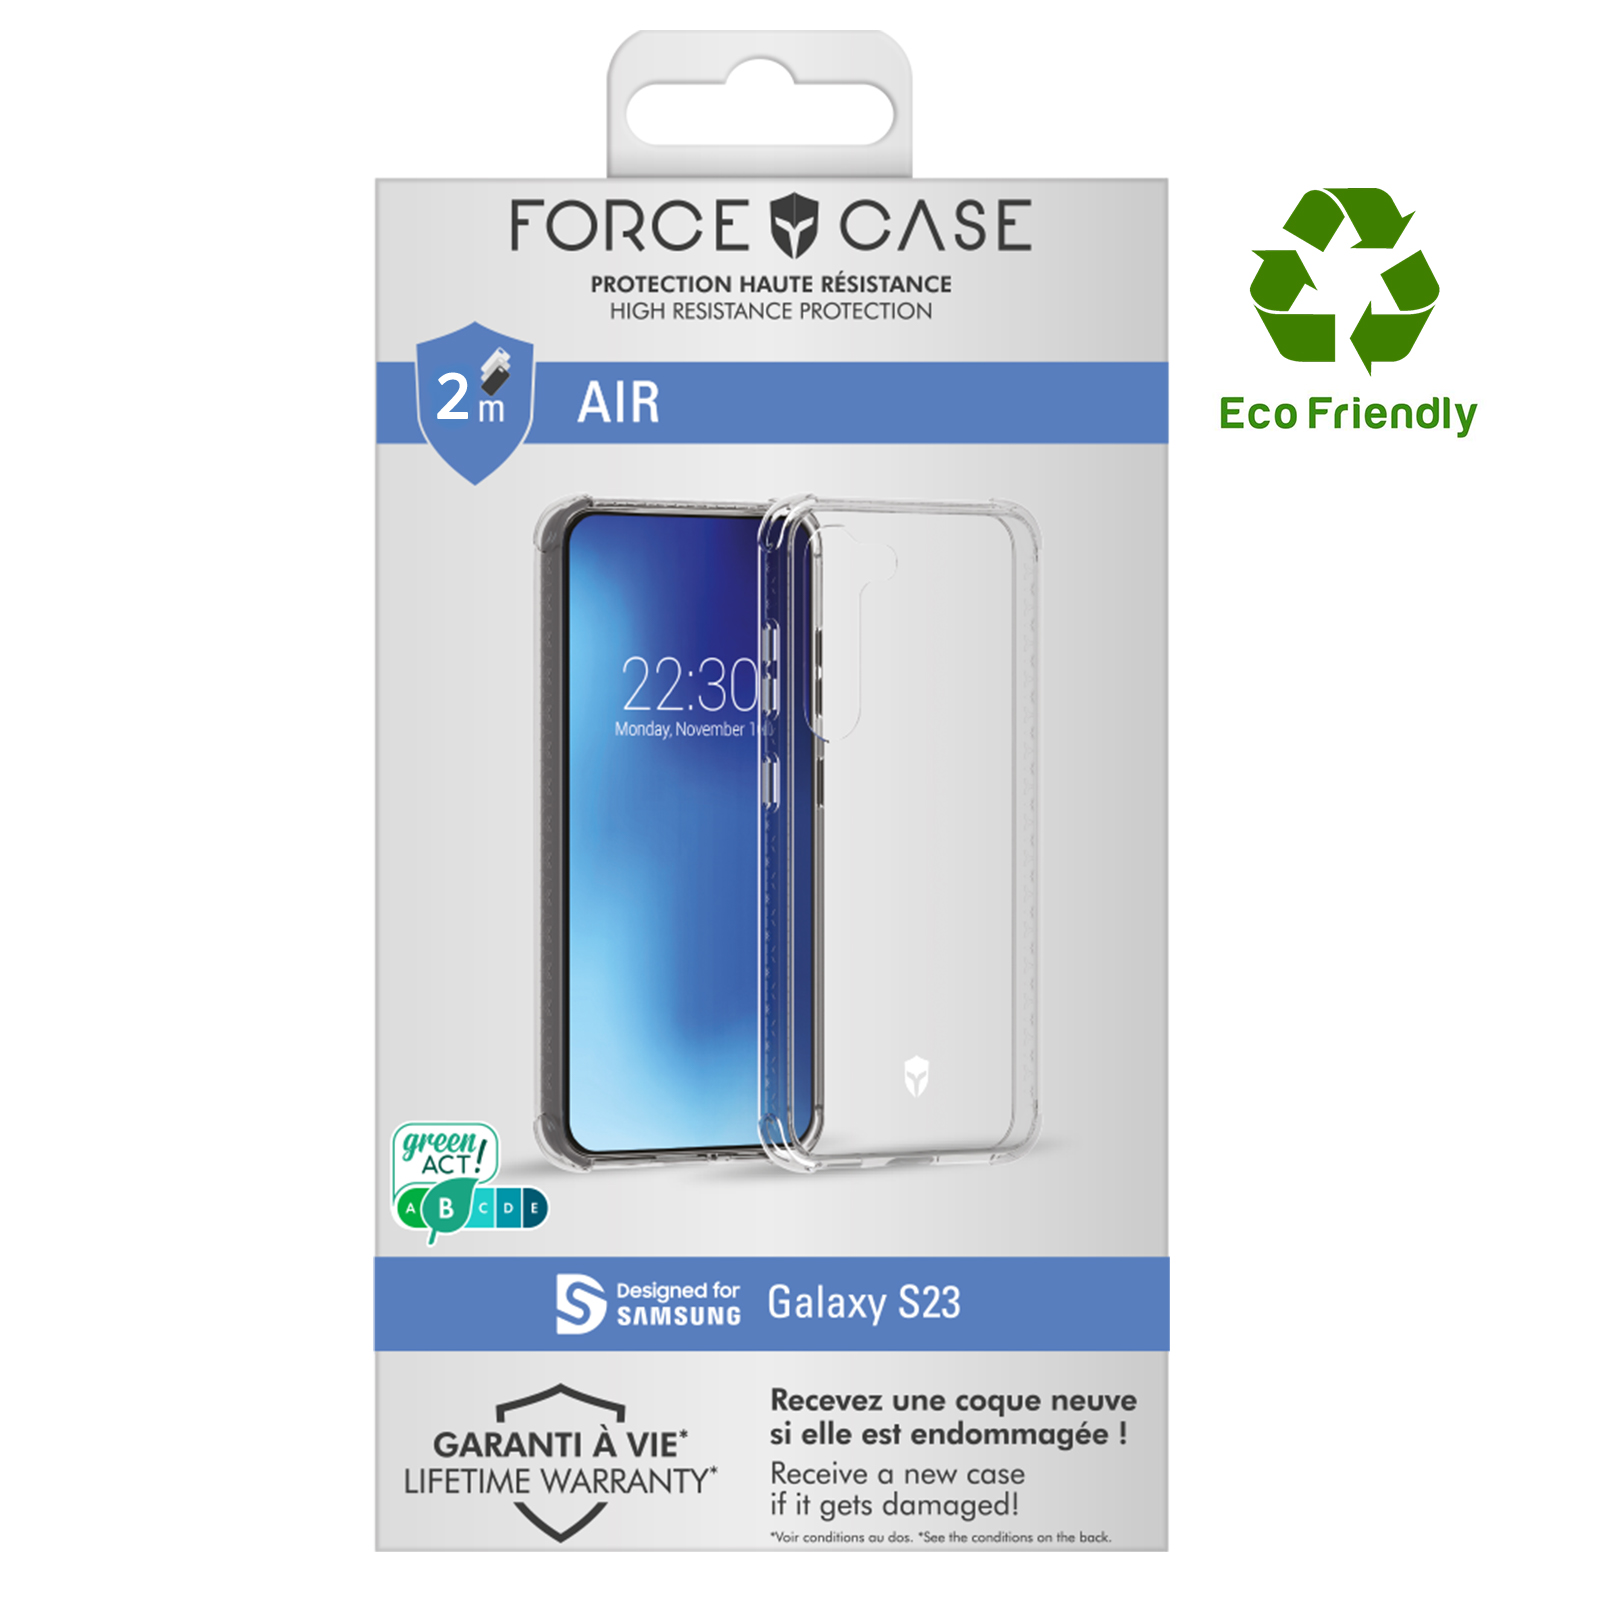 Coque Force Case Samsung Galaxy S23 Garantie à Vie - Collection